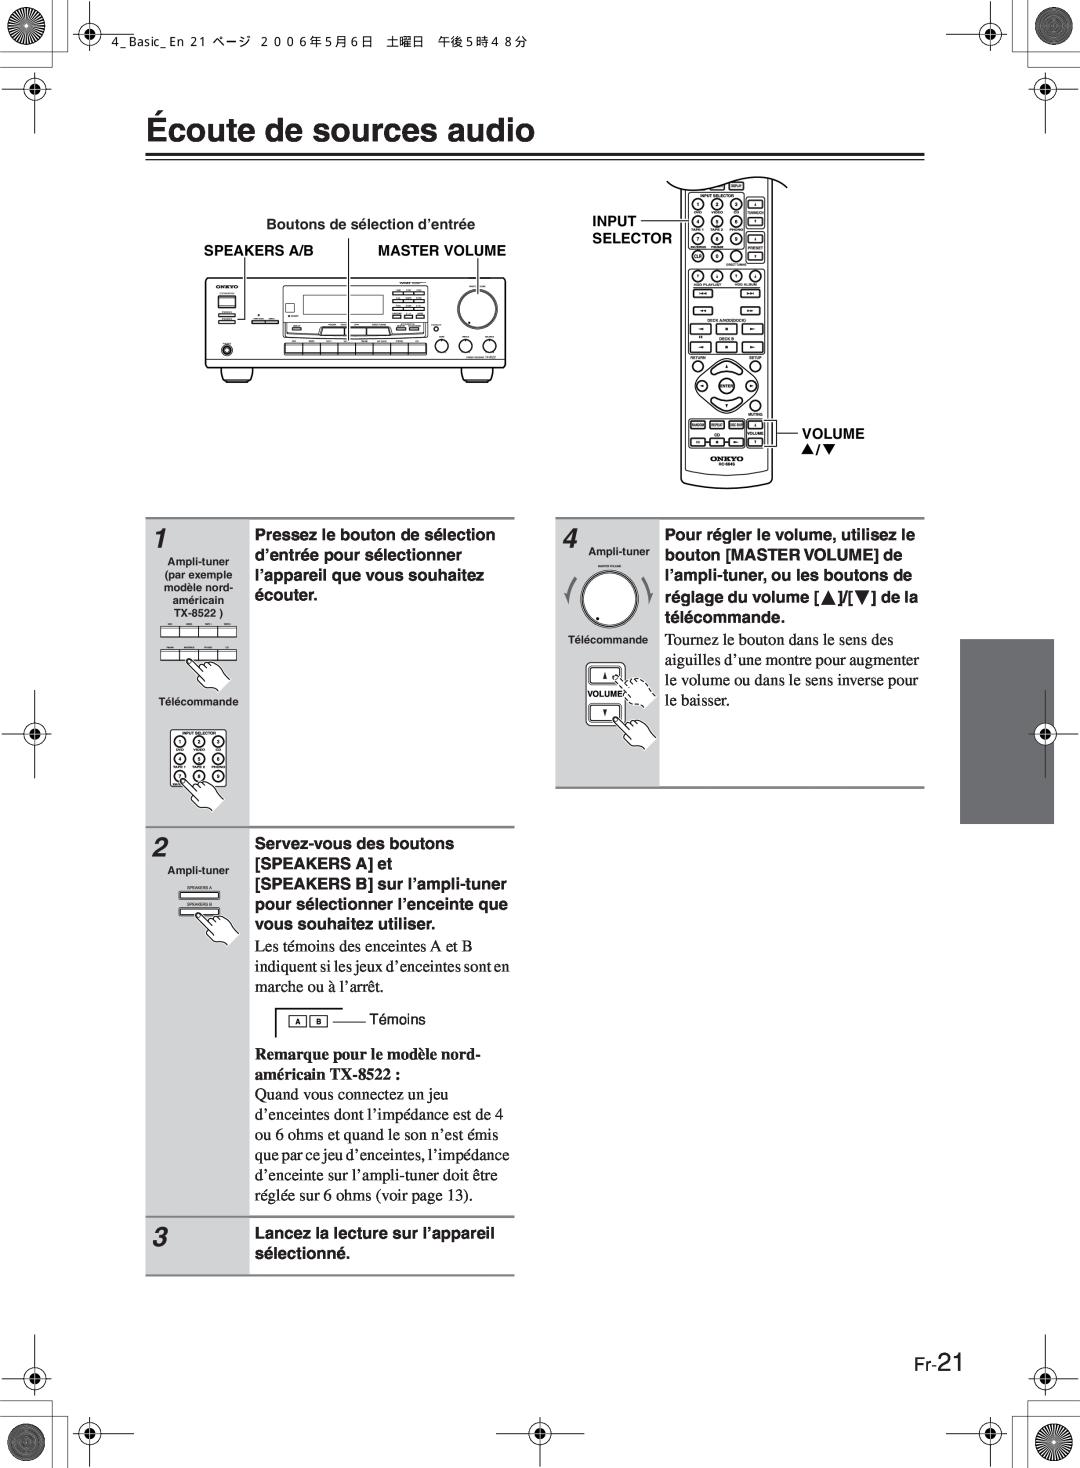 Onkyo TX-8222 manual Écoute de sources audio, Fr-21, Remarque pour le modèle nord- américain TX-8522 